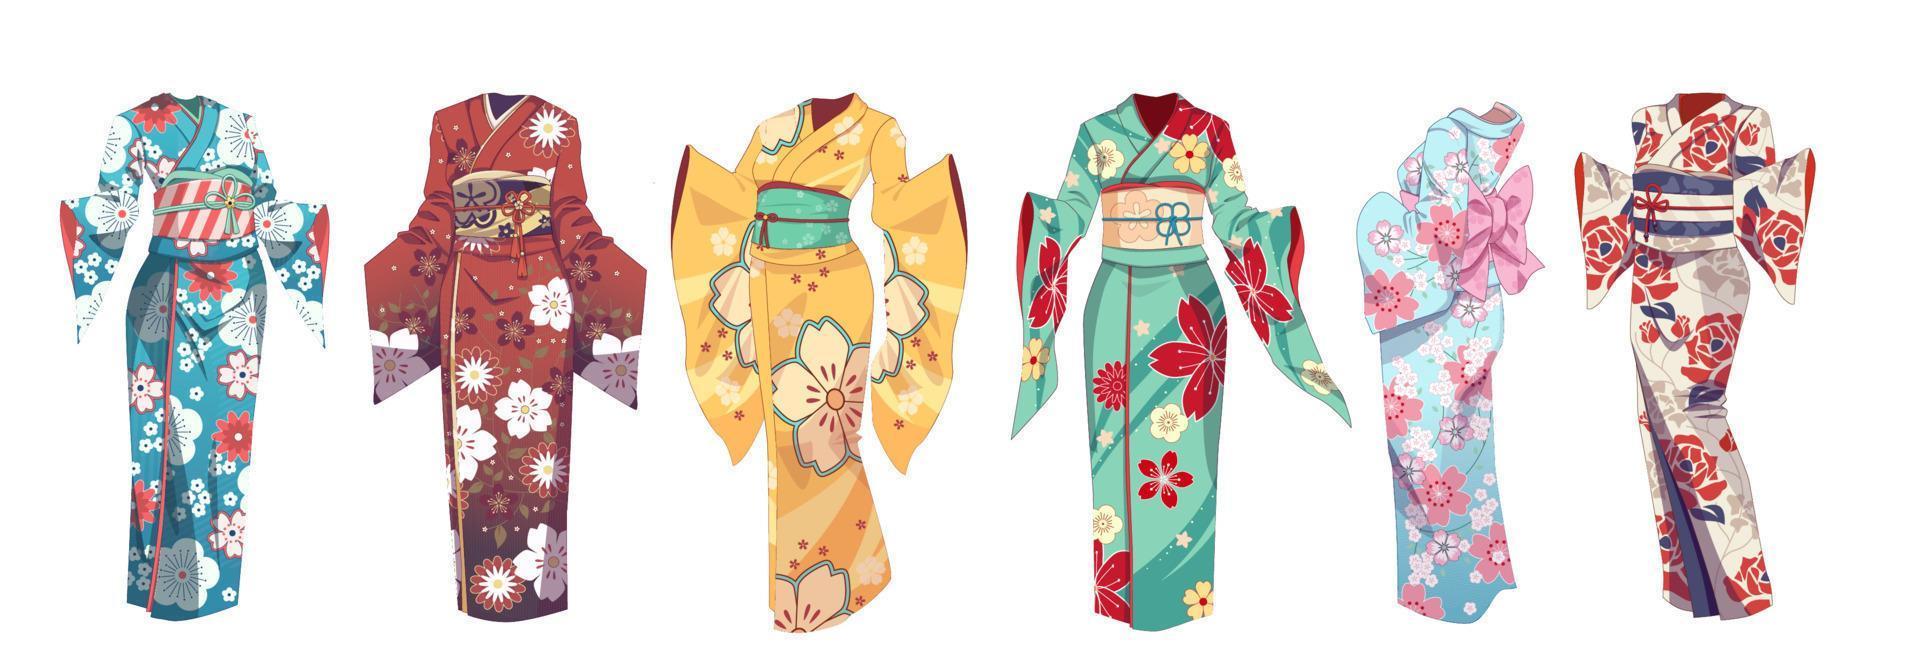 ensemble de kimono de vêtements traditionnels asiatiques et japonais. vêtements d'été - yukata. illustration vectorielle sur fond isolé vecteur